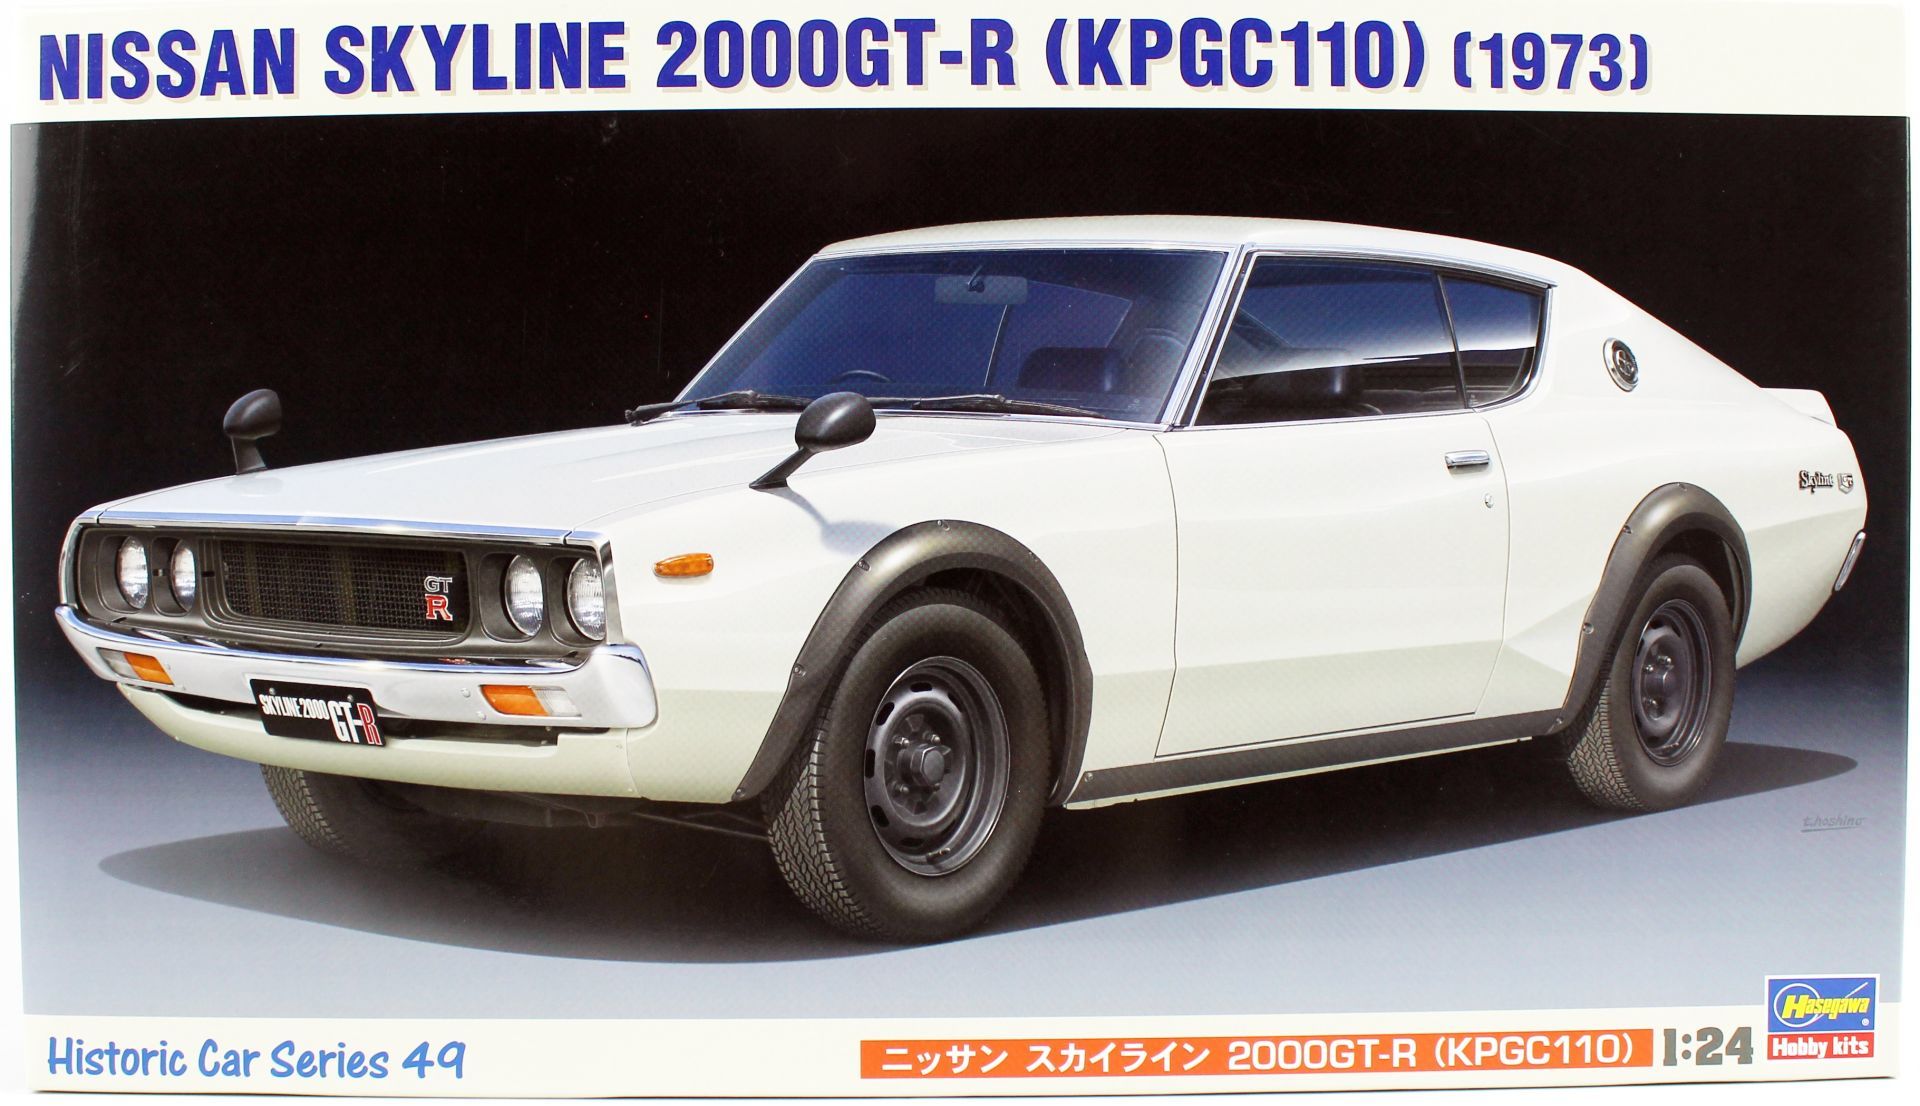 Hasegawa HC49 21149 1/24 Ölçek Nissan Skyline 2000GT-R (KPGC110) Otomobil Plastik Model Kiti